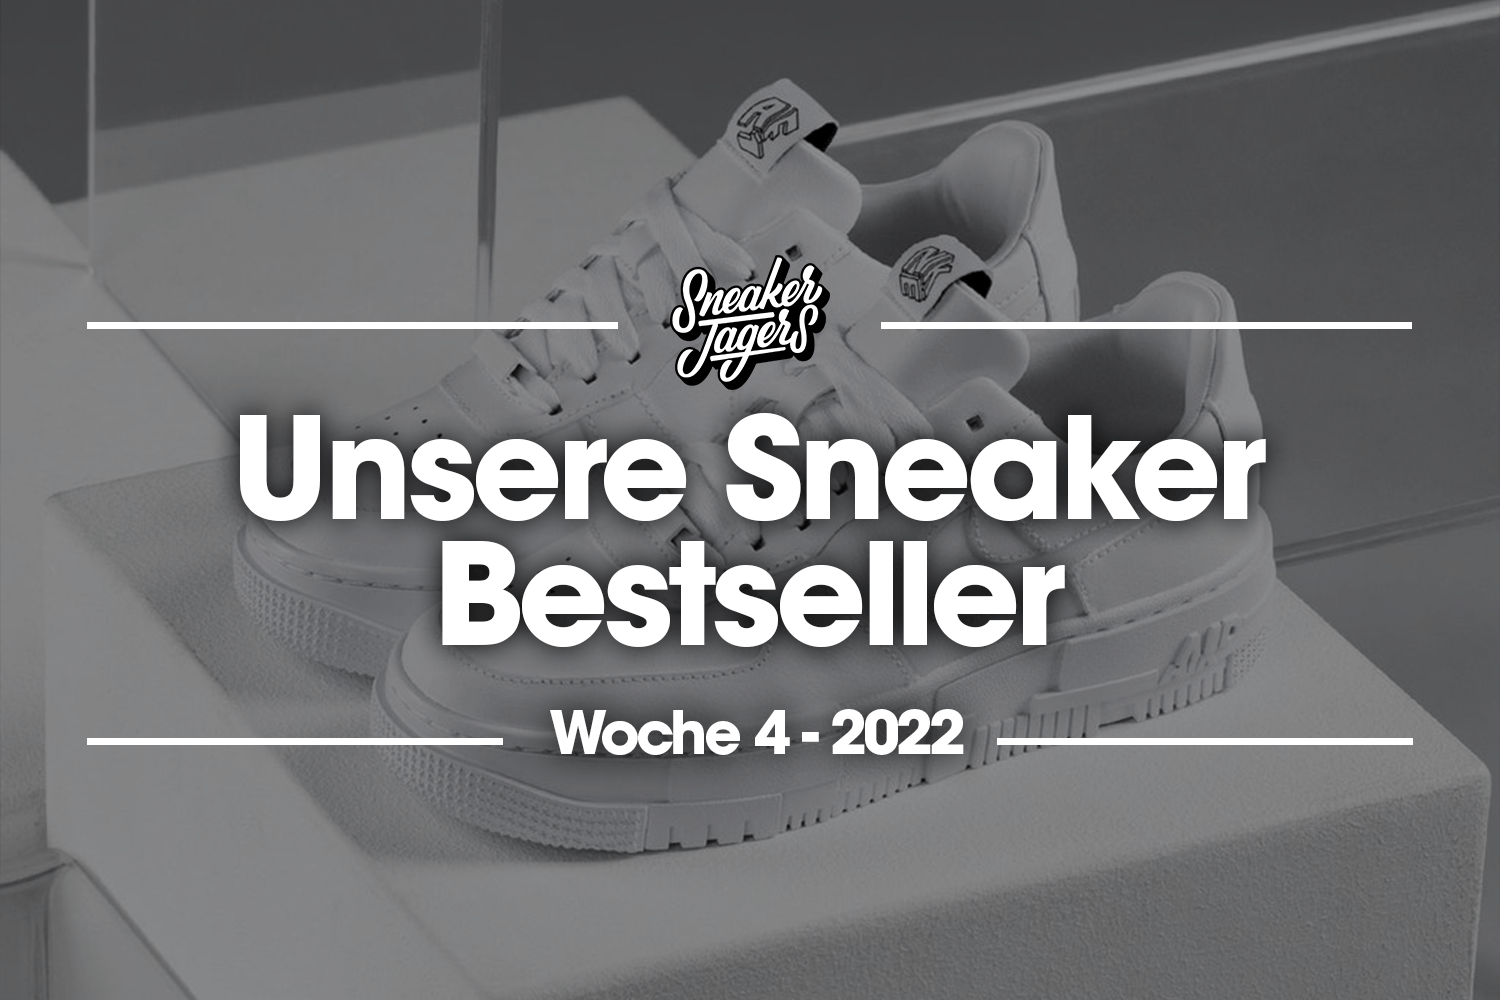 Unsere Sneaker Bestseller - Woche 4 - Das ist im Trend